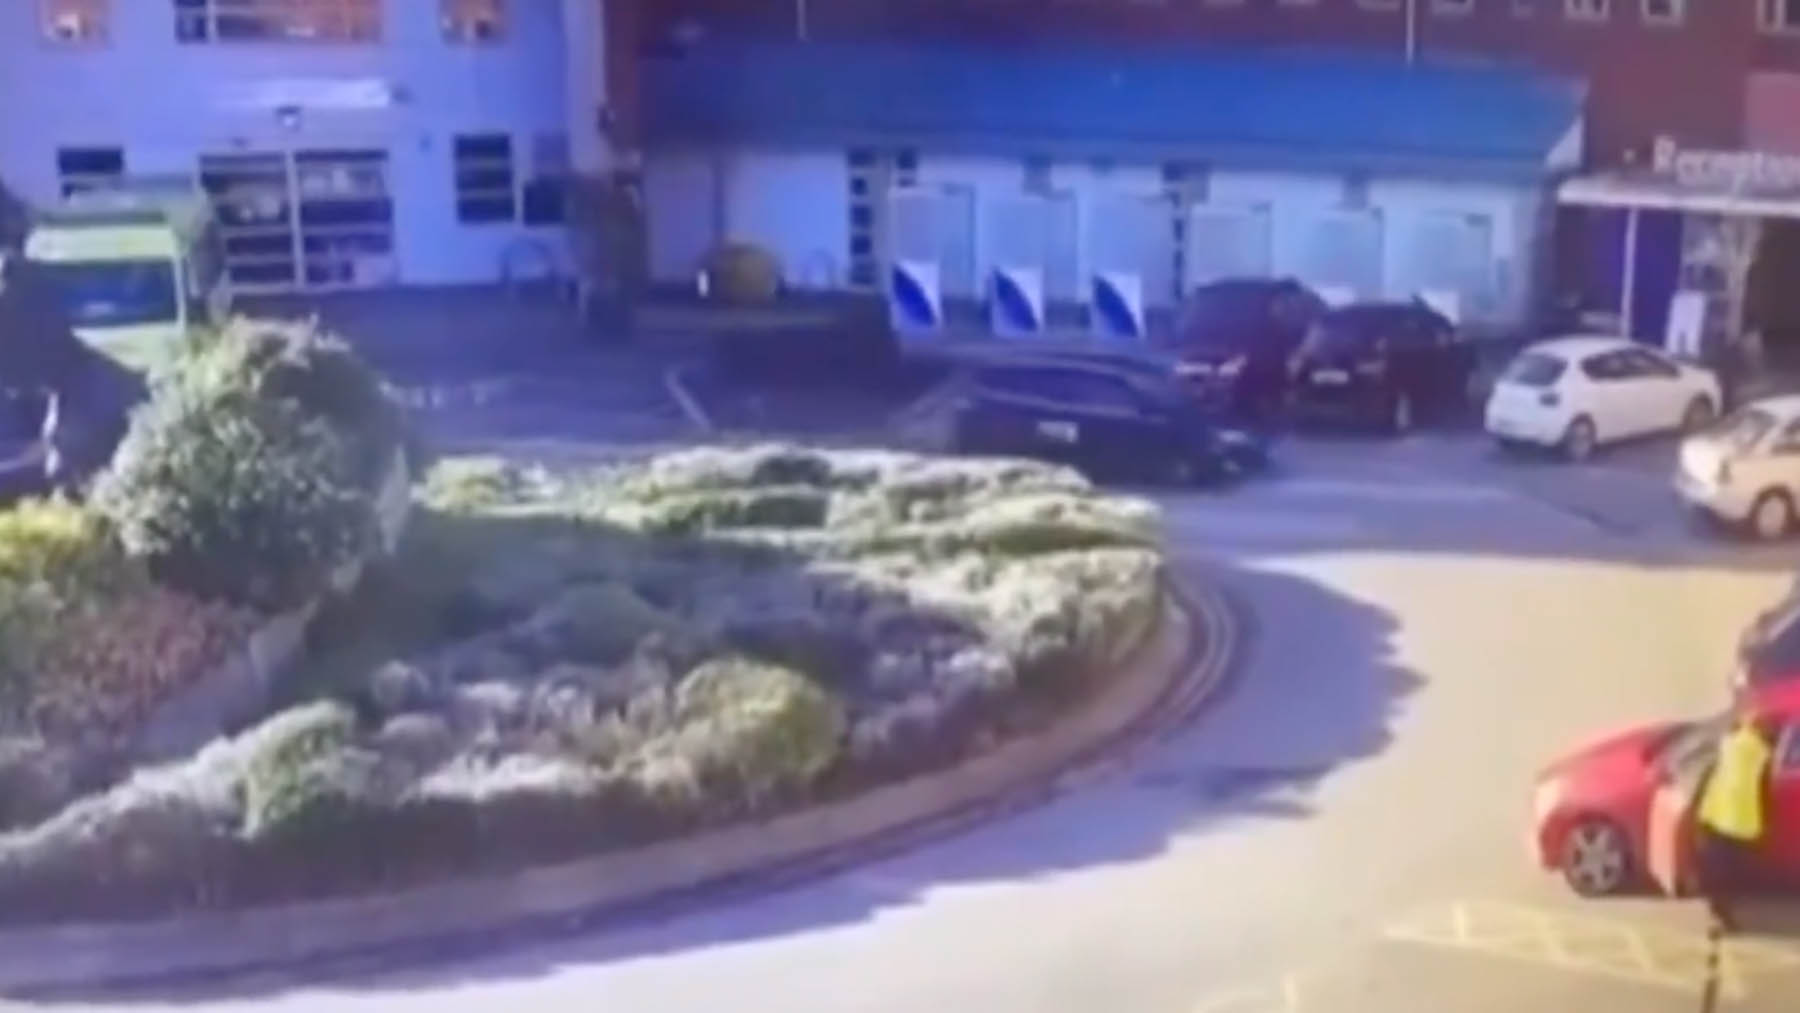 Fotoigramada del vídeo que registra la explosión frente al hospital de Liverpool.